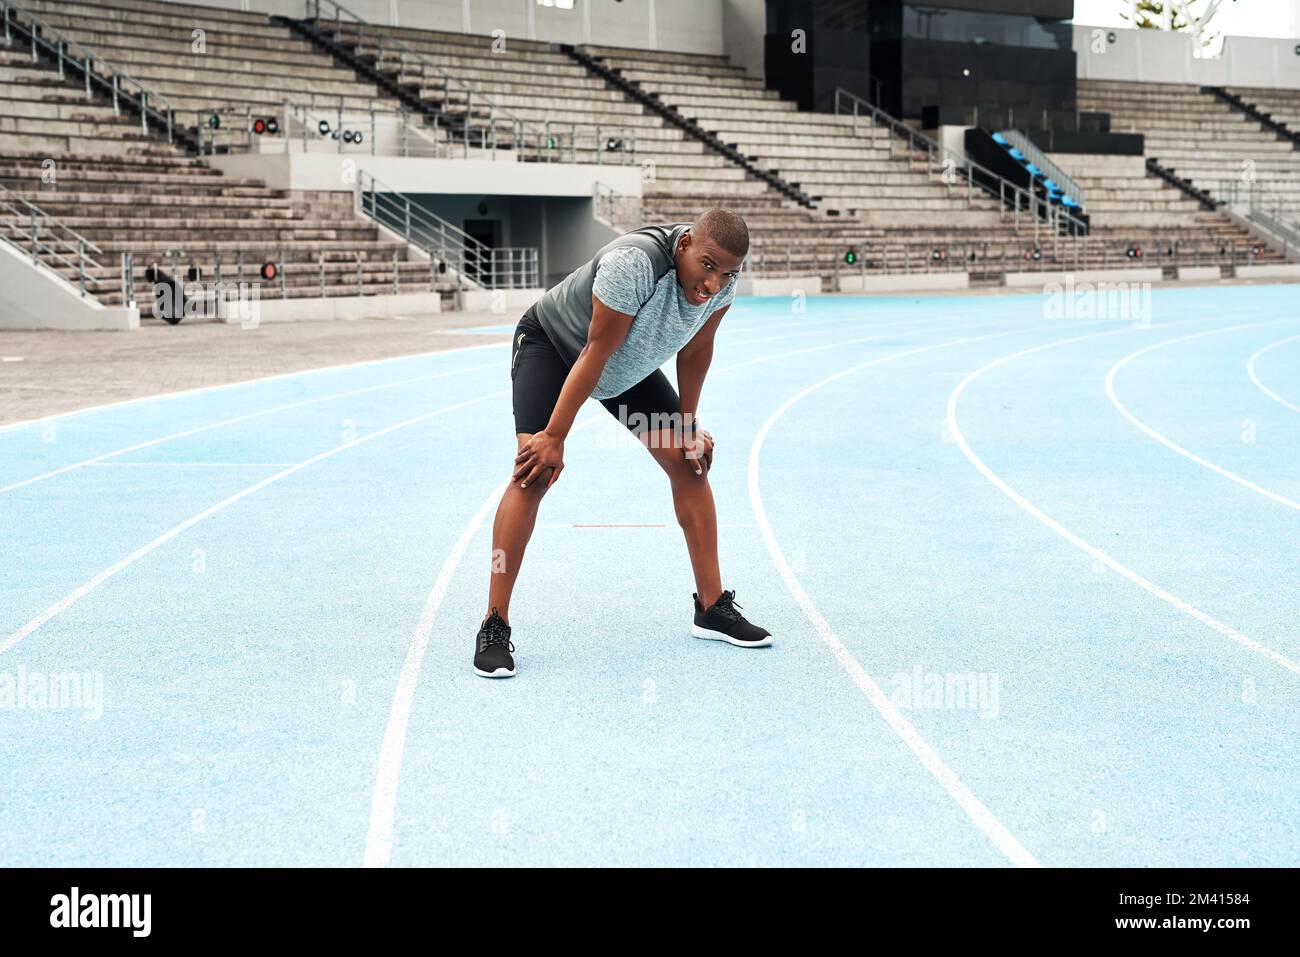 Puh, das hat sich gut angefühlt. Ein langes Porträt eines gutaussehenden jungen Athleten, der allein auf einem Leichtathletikfeld steht und nach dem Laufen Luft schnappt. Stockfoto